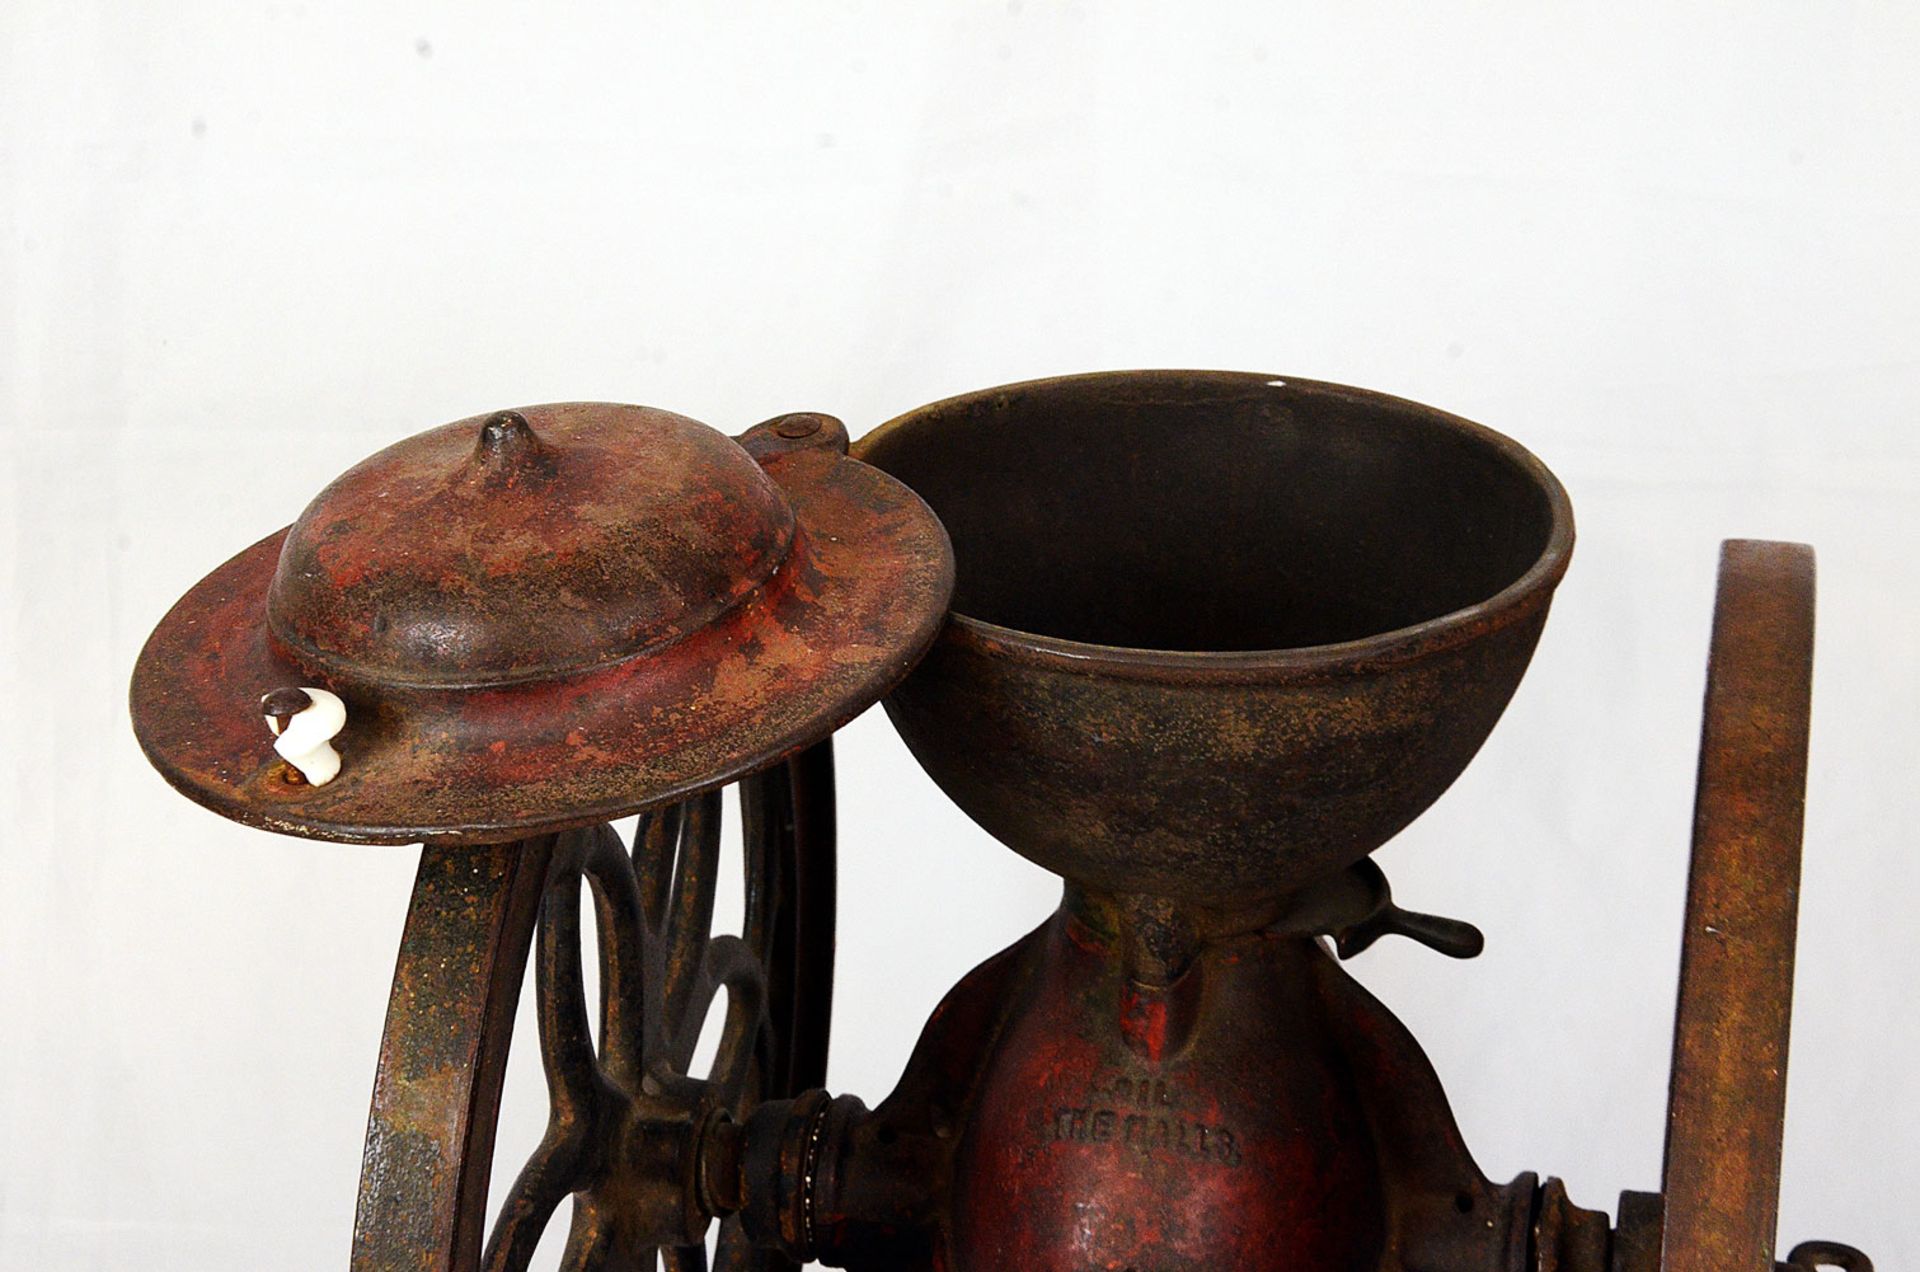 Vintage Landers Fray & Clark coffee grinder - Image 4 of 10